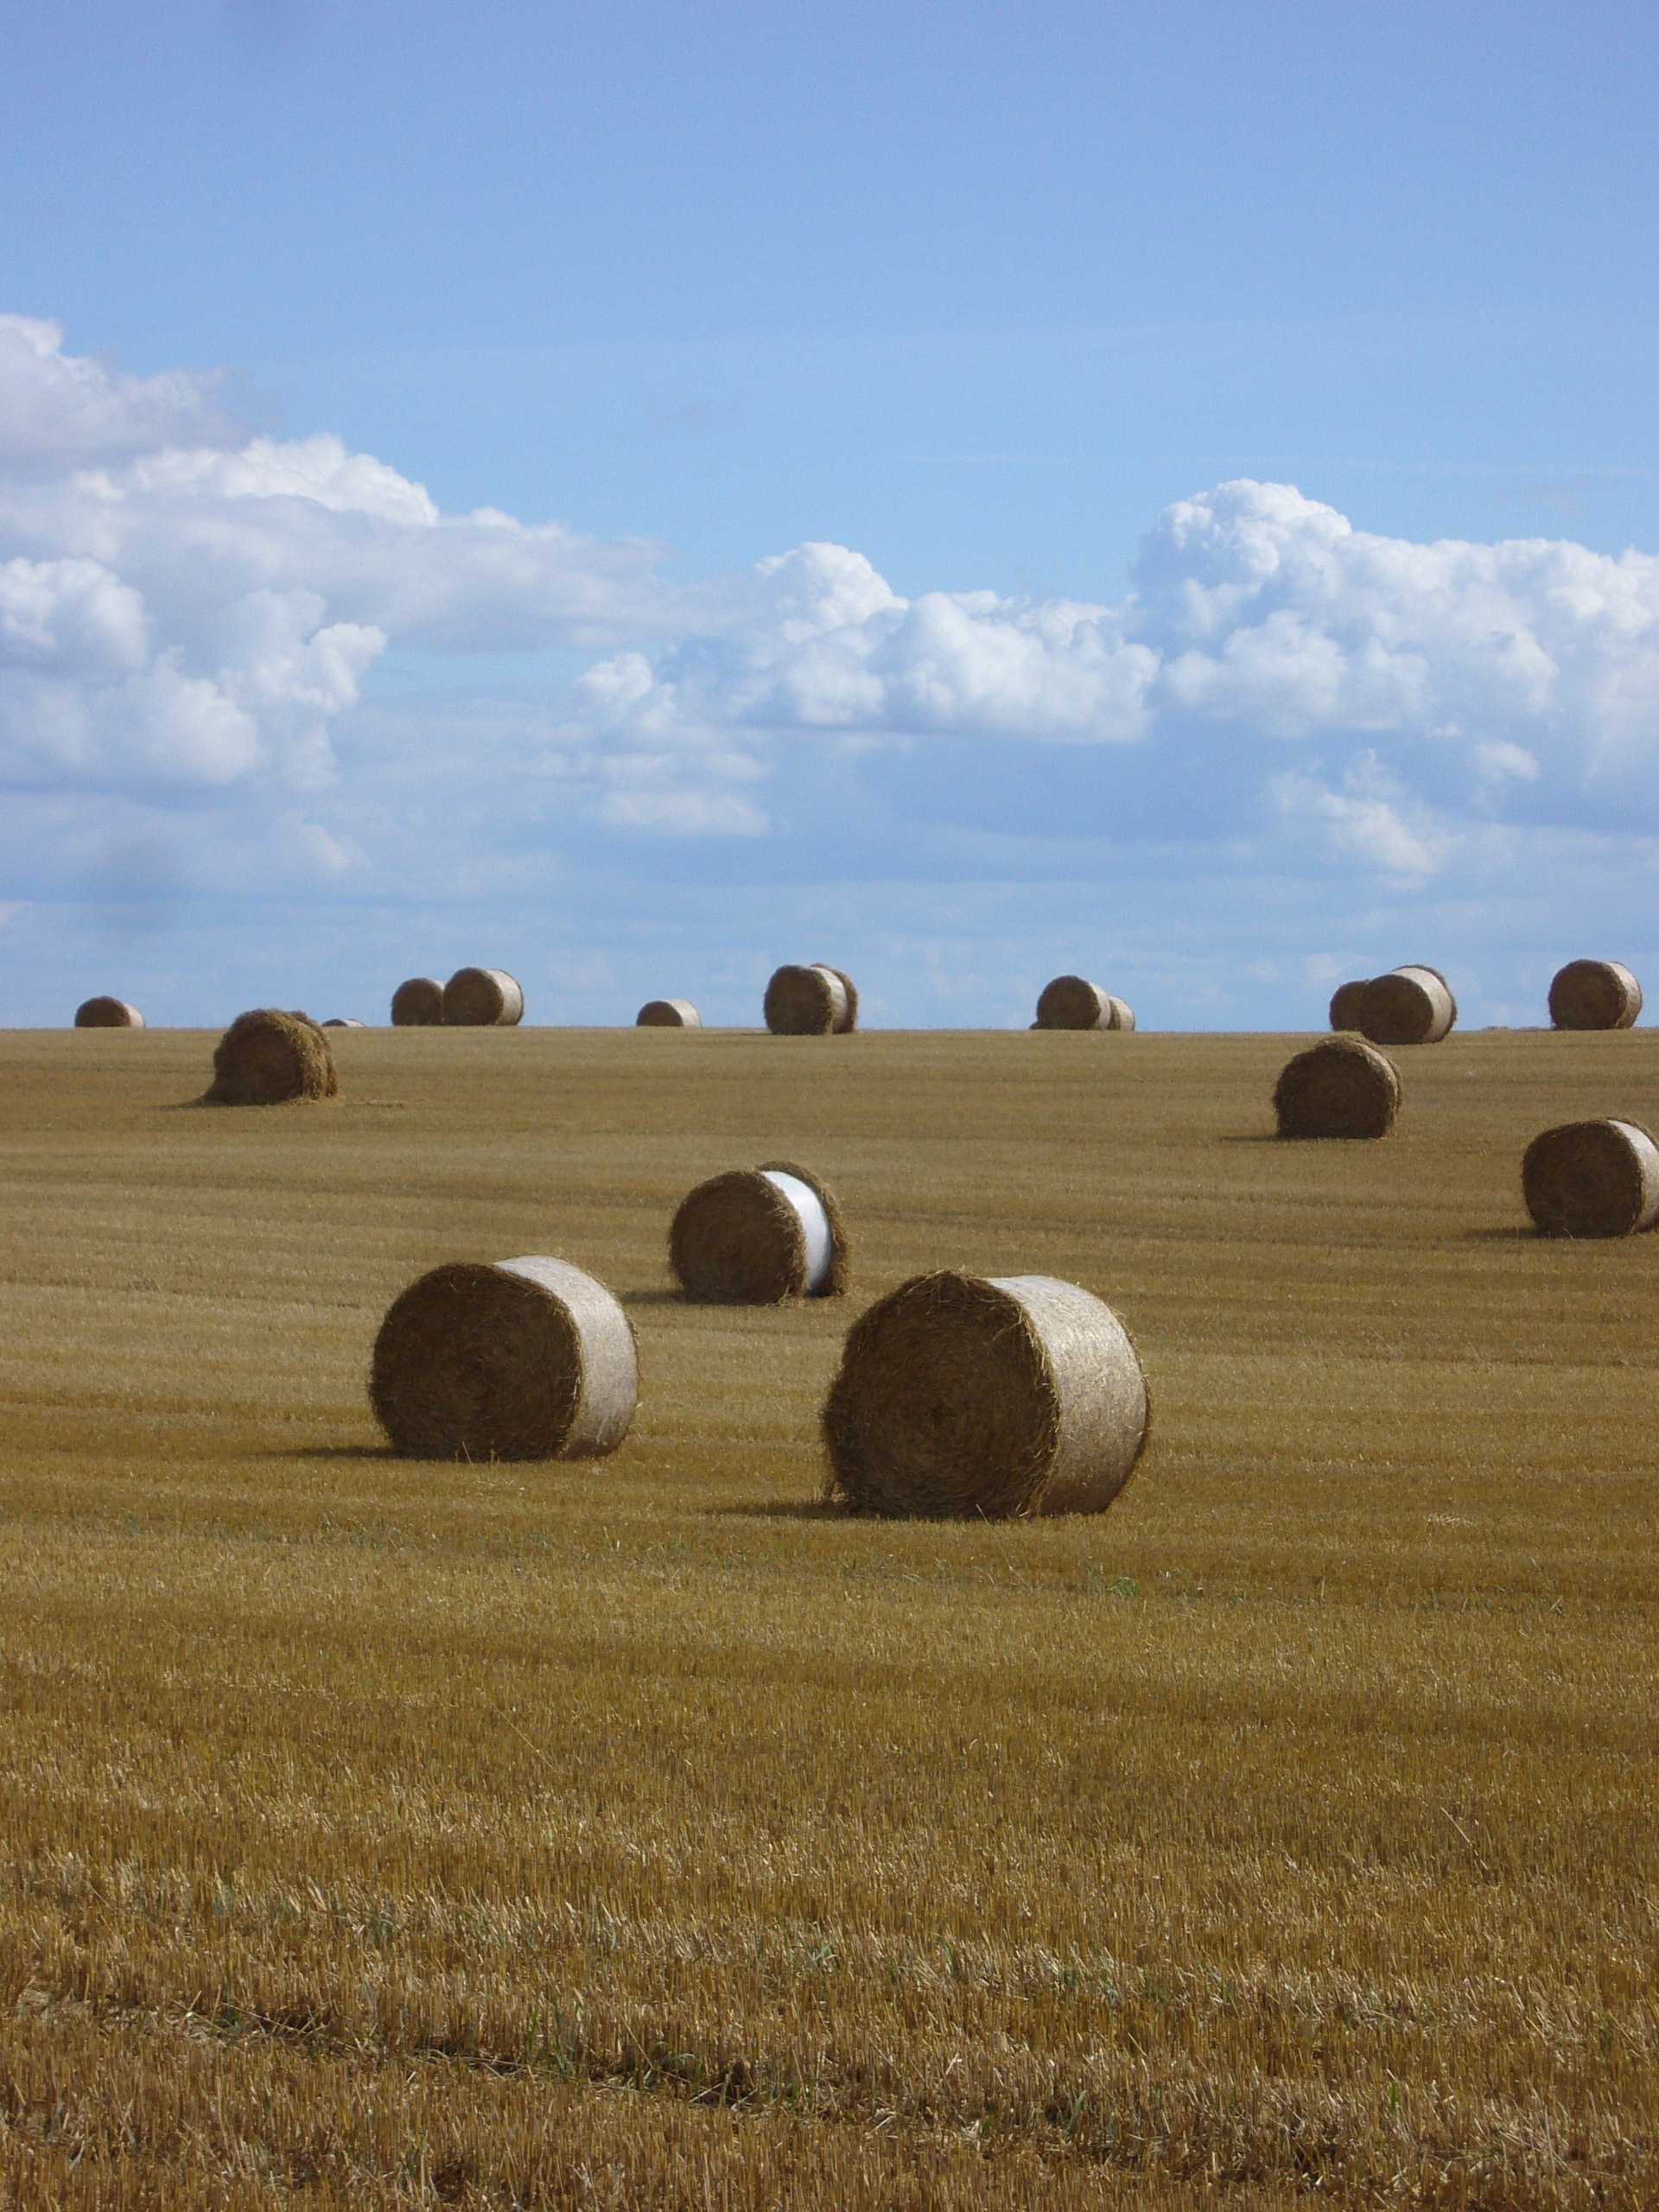 hay rolls on field under cloudy sky